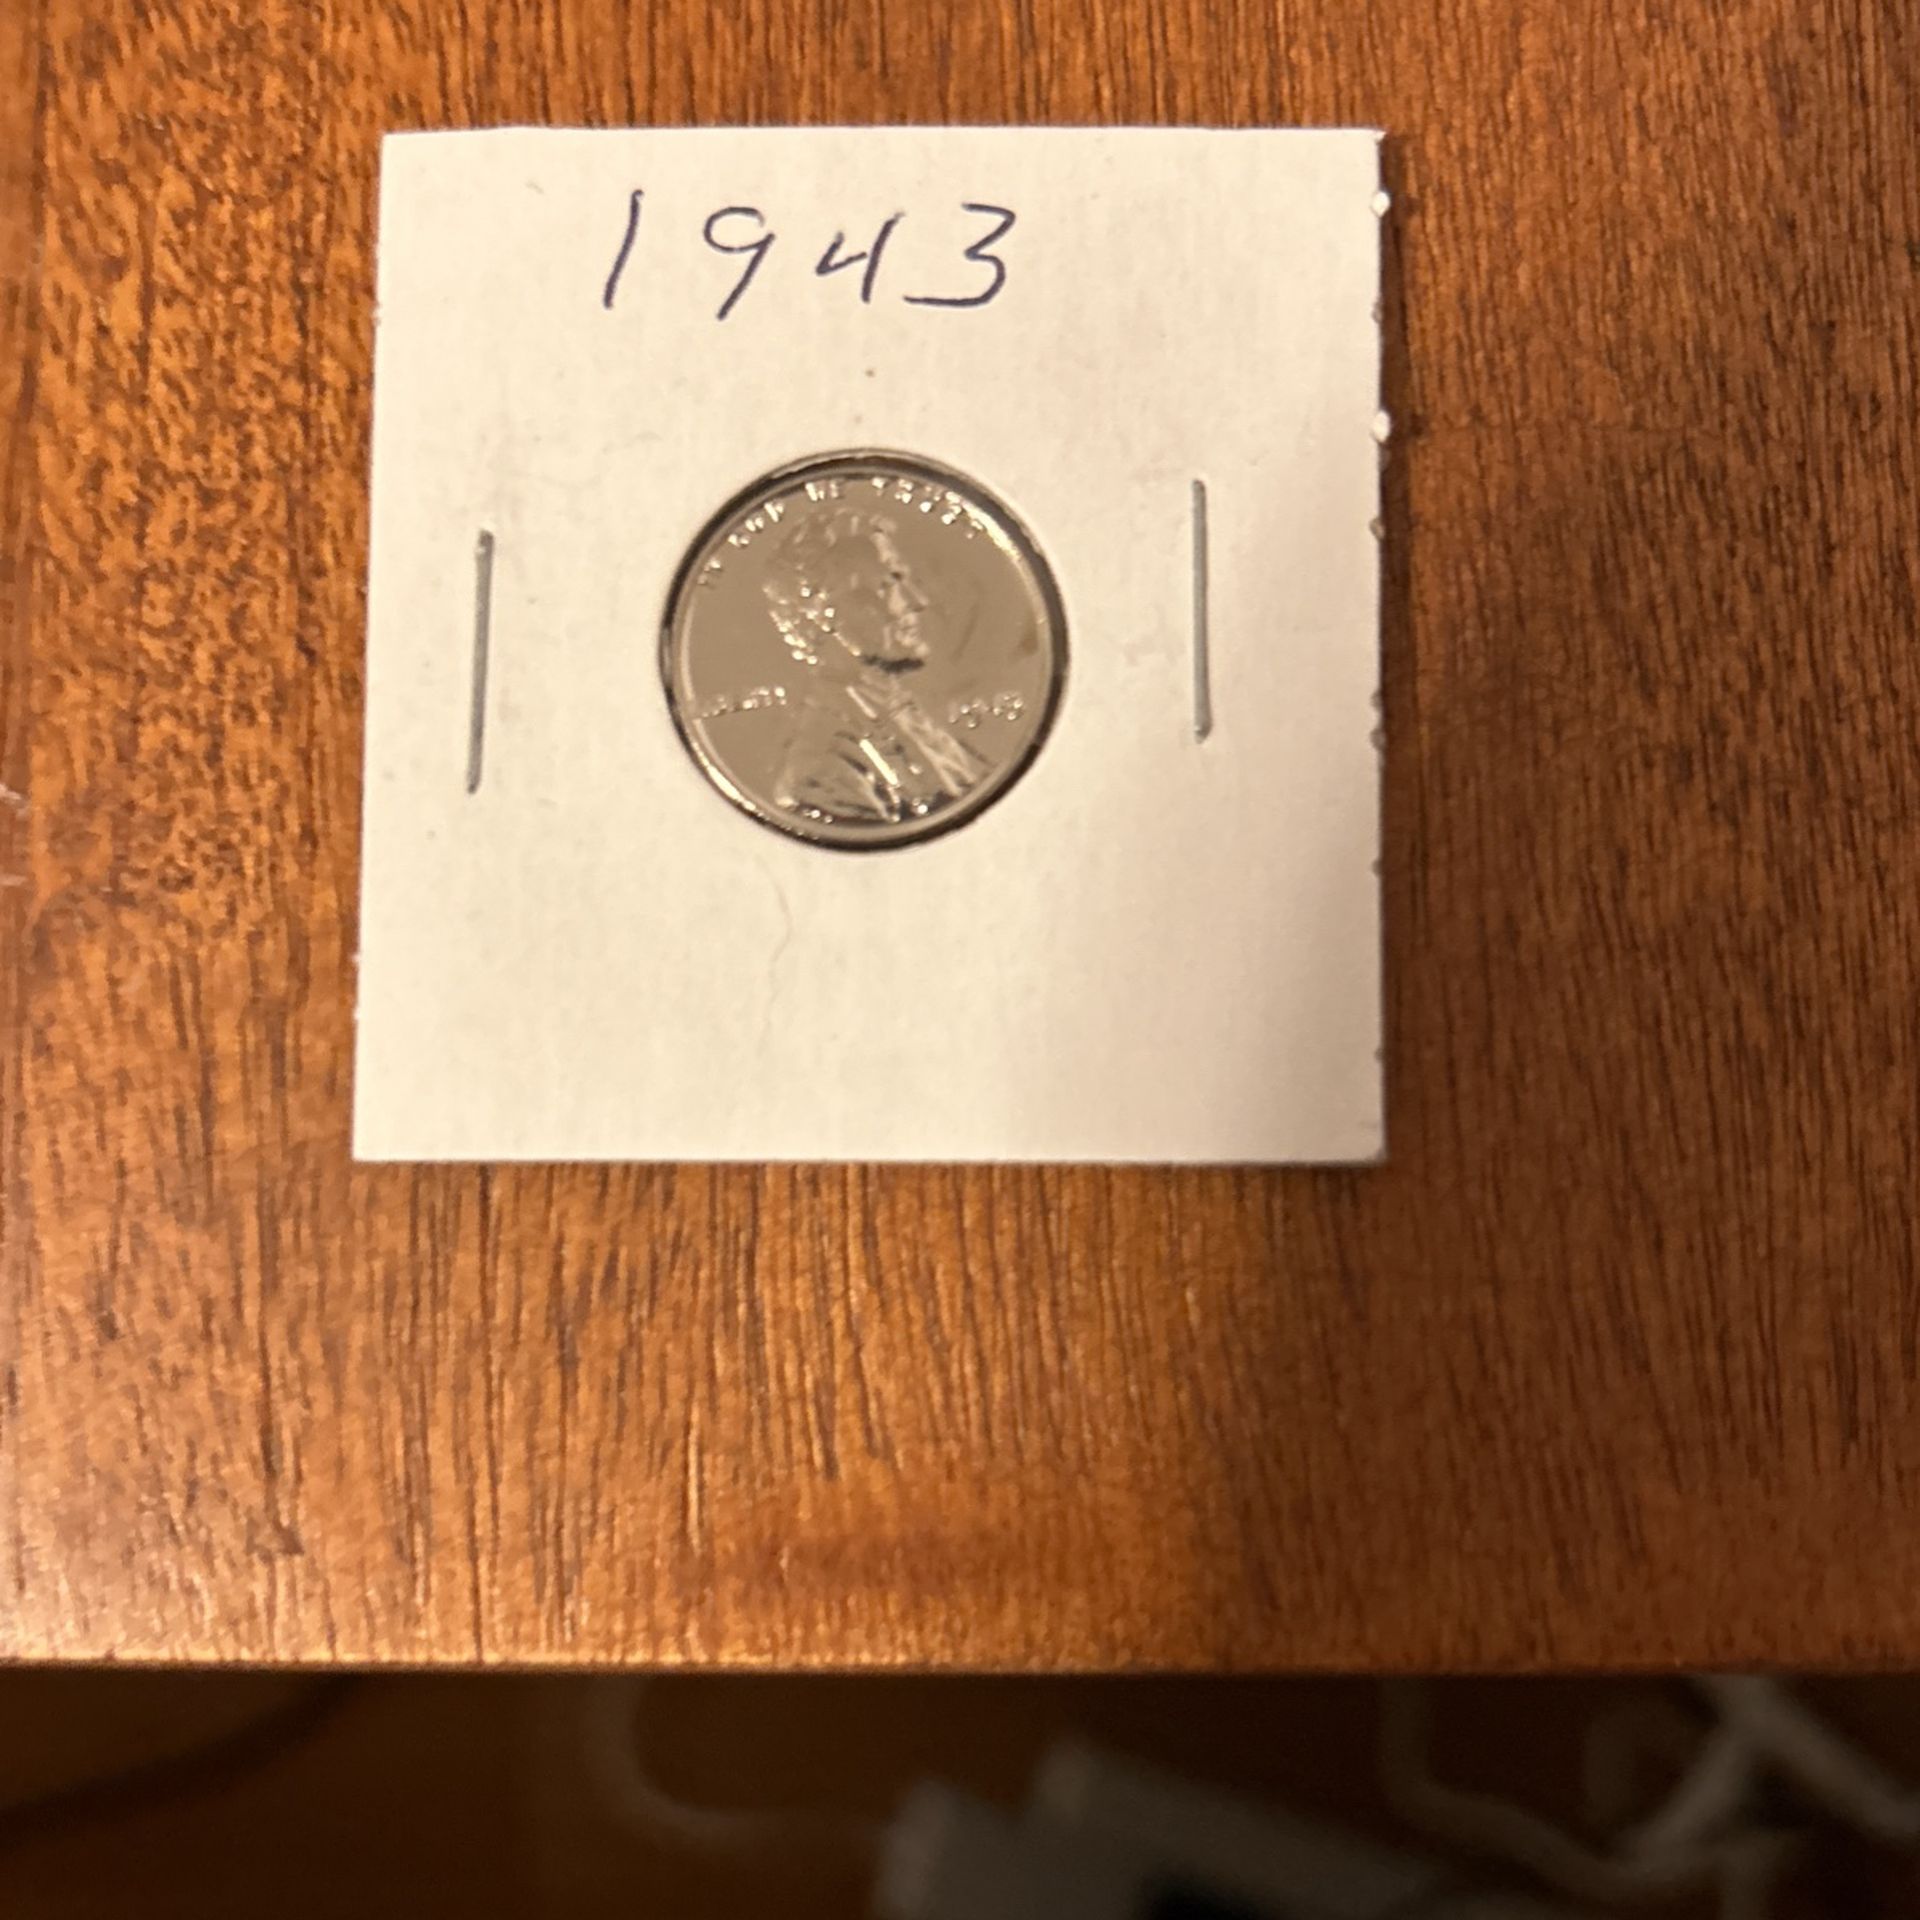 1943 Steel War Penny